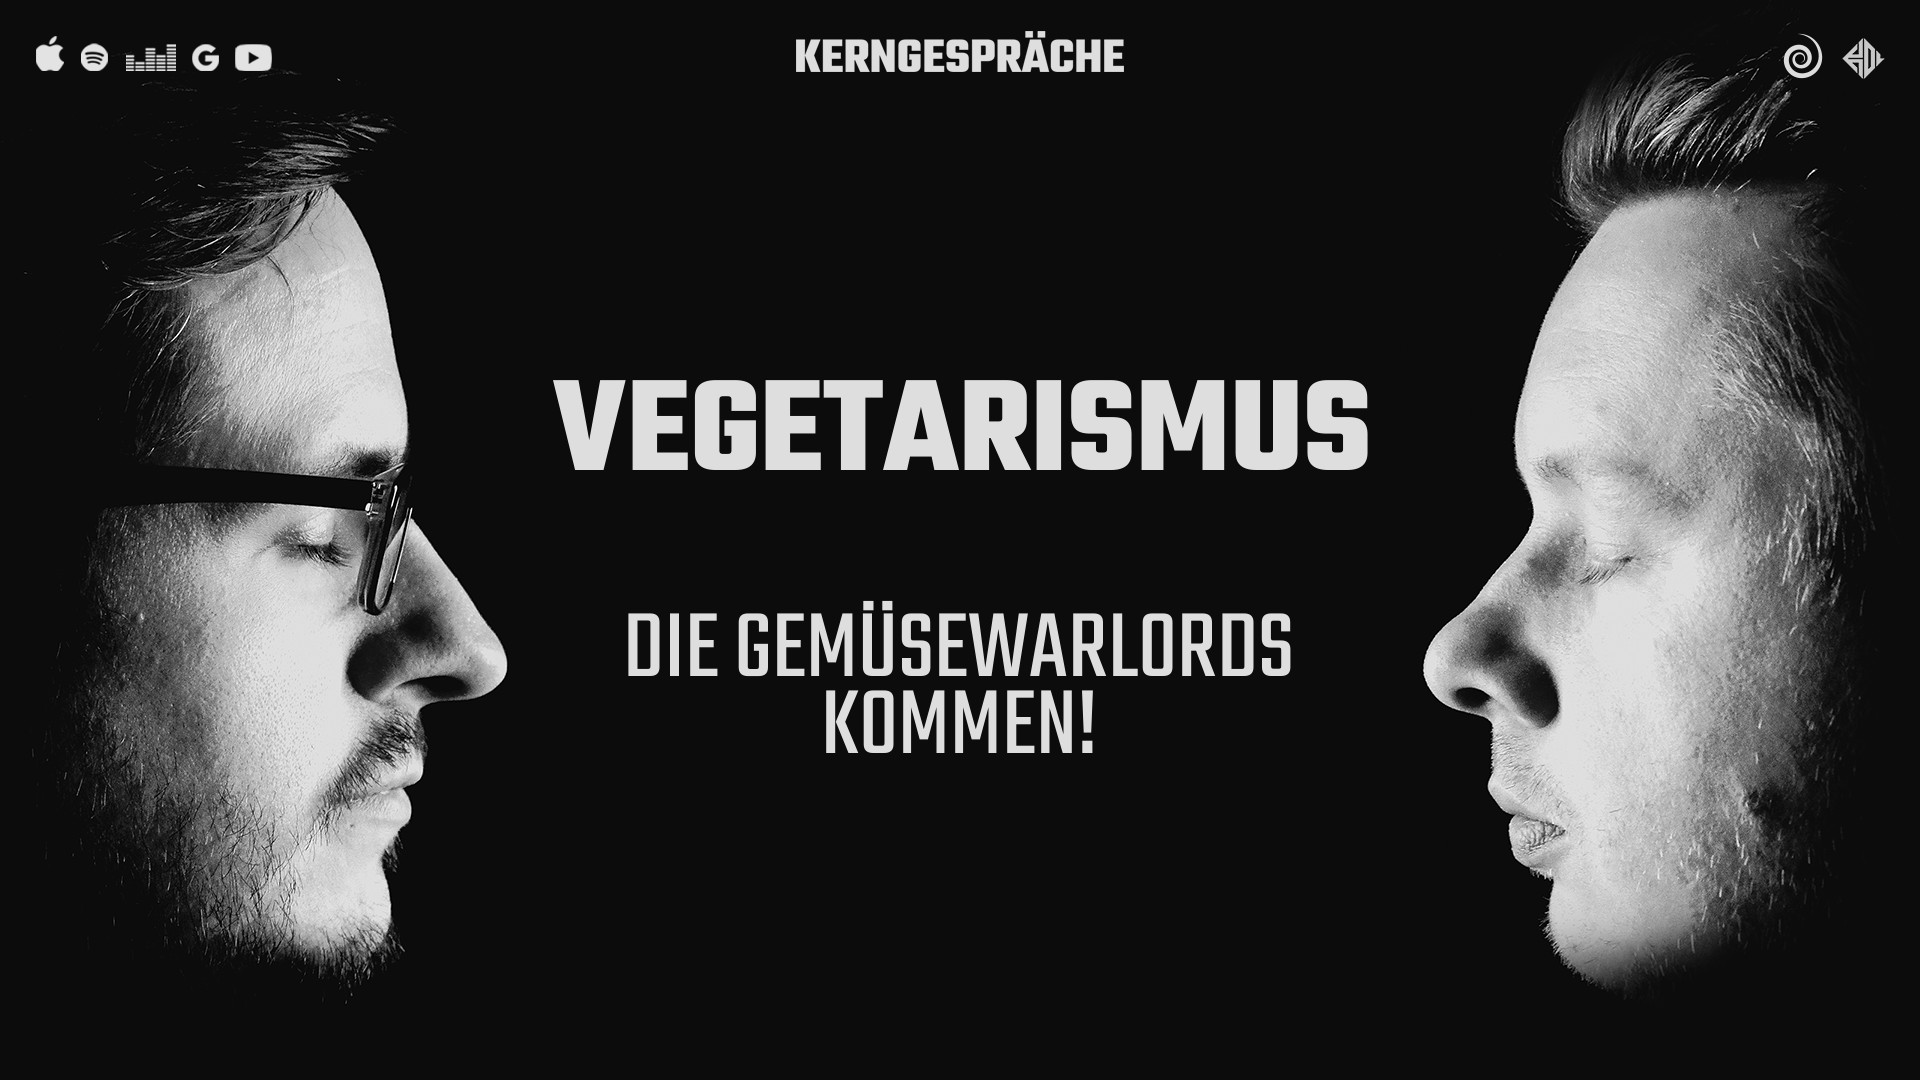 Vegetarismus: Die Gemüsewarlords kommen!